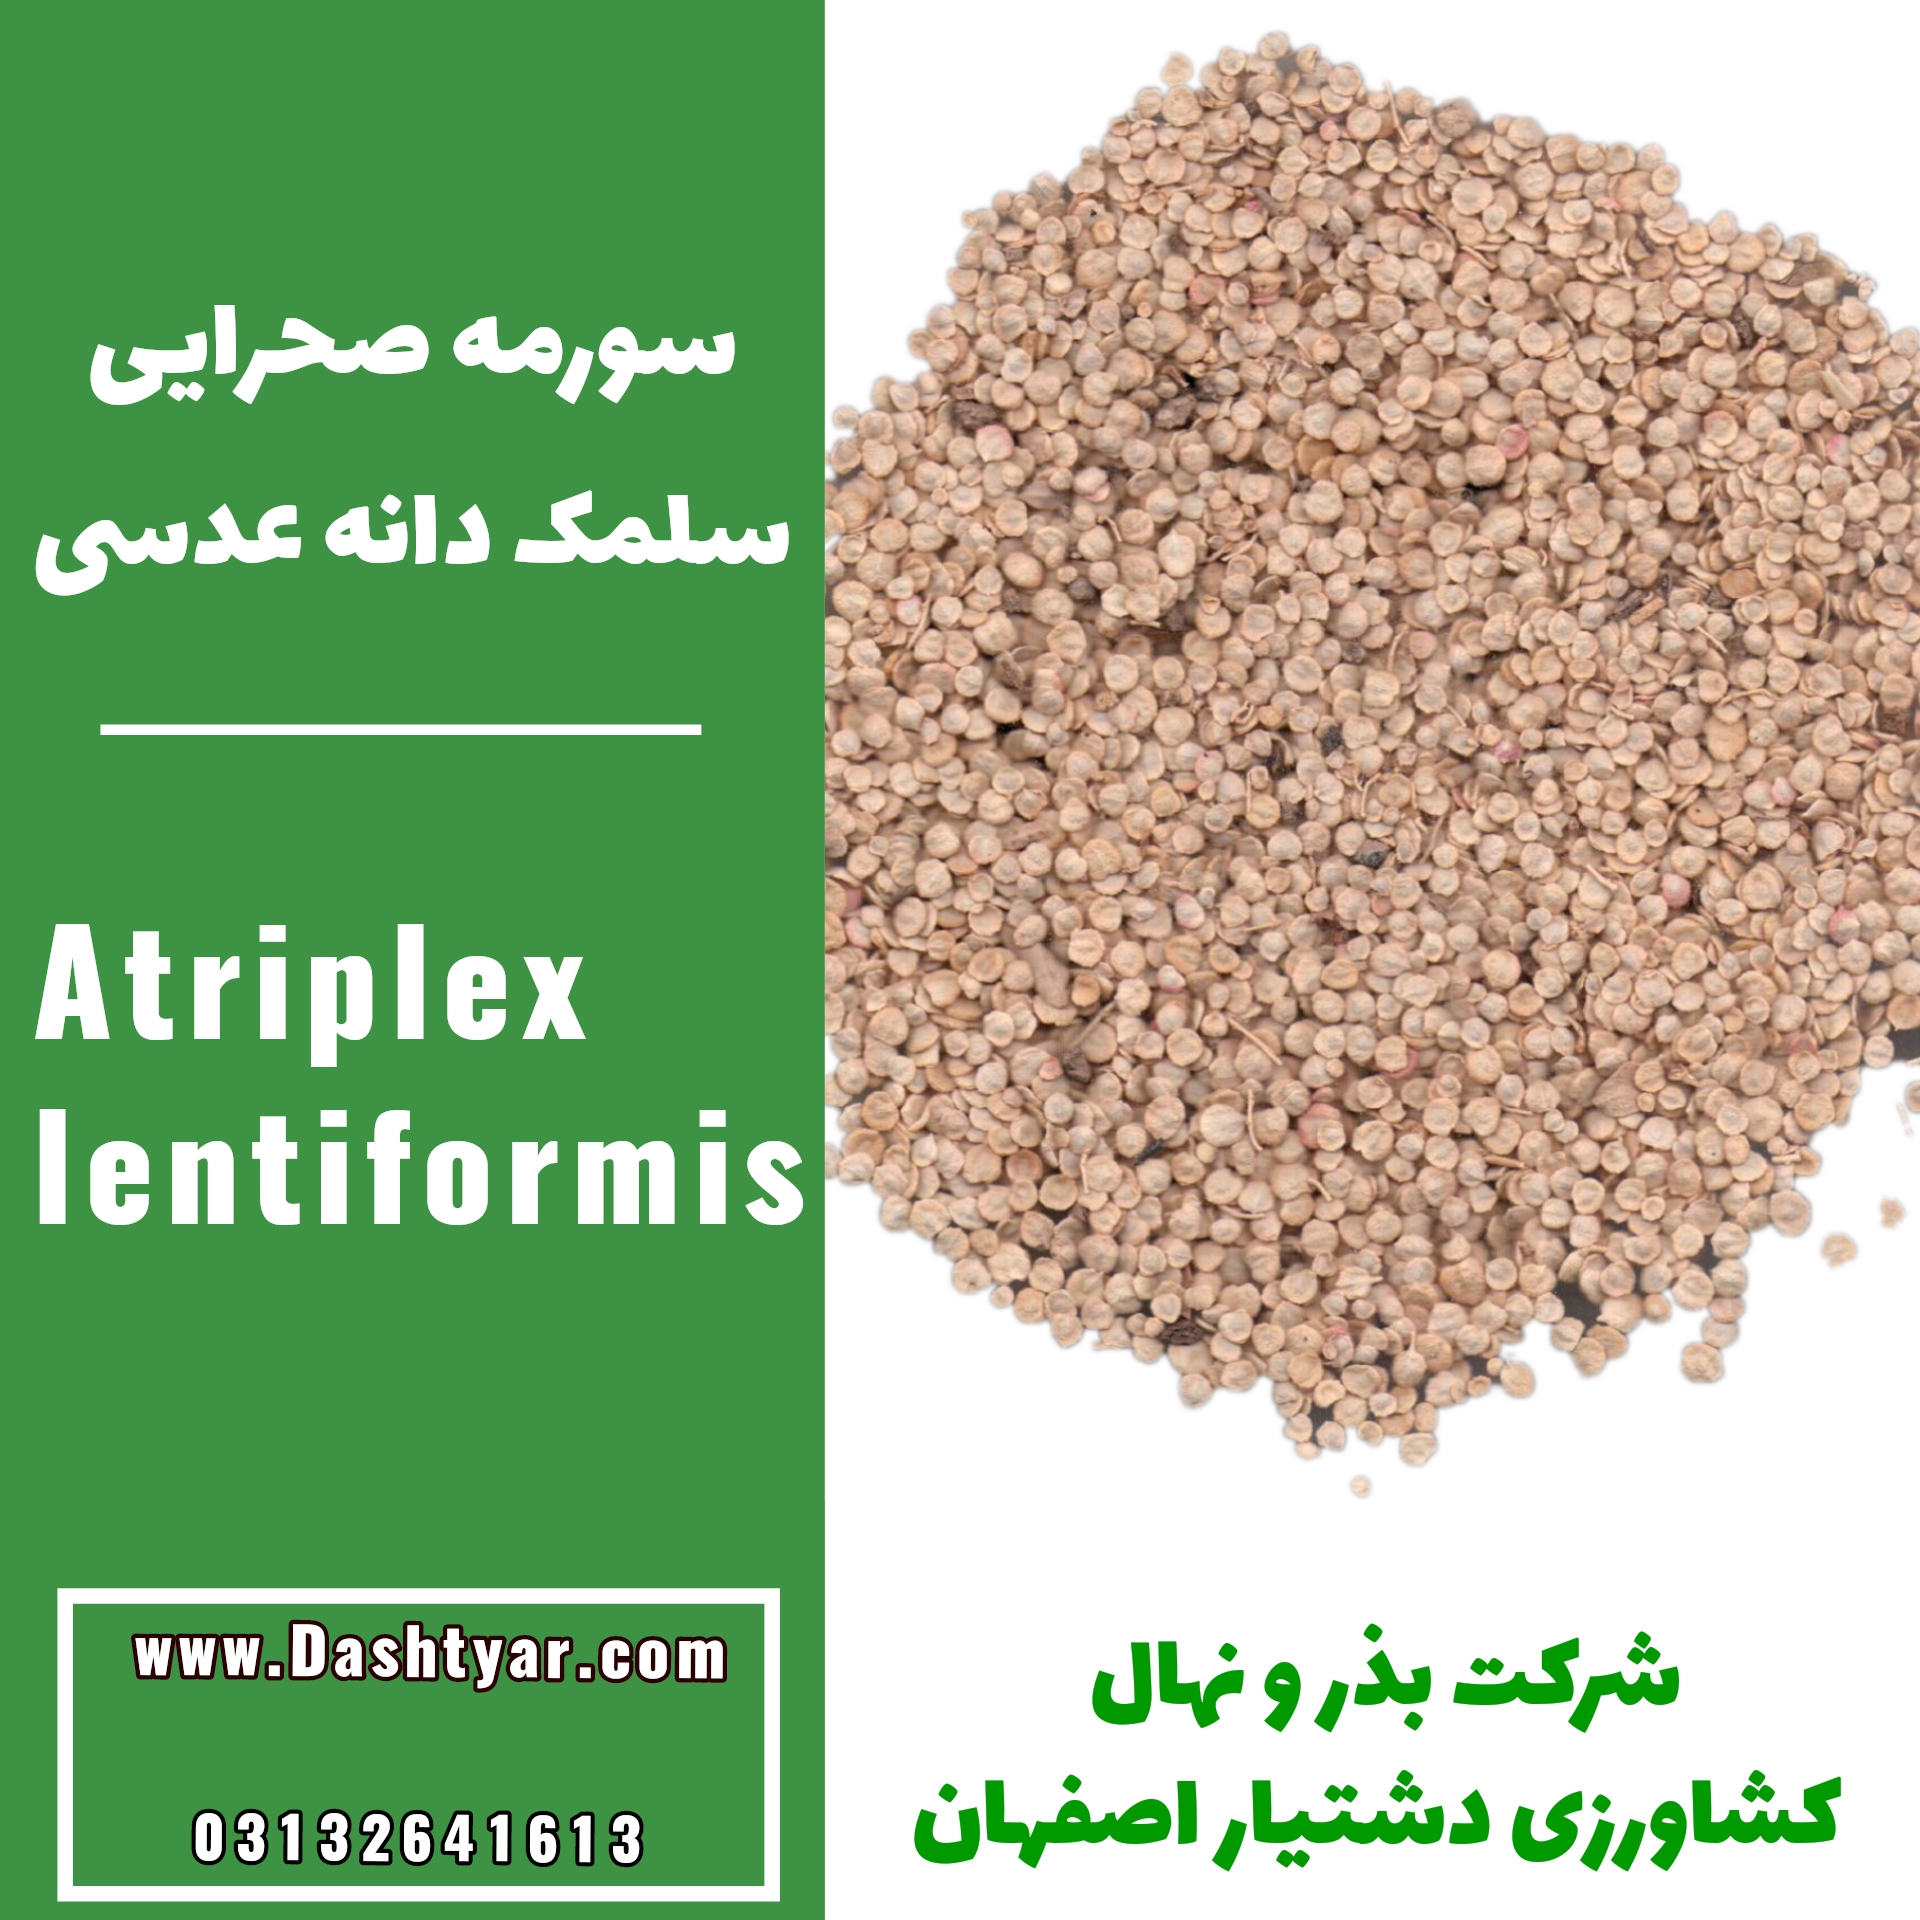 بذر گیاهان بیابانی و کویری بذر آتریپلکس لنتی فورمیس یا سورمه صحرایی سلمک دانه عدسی